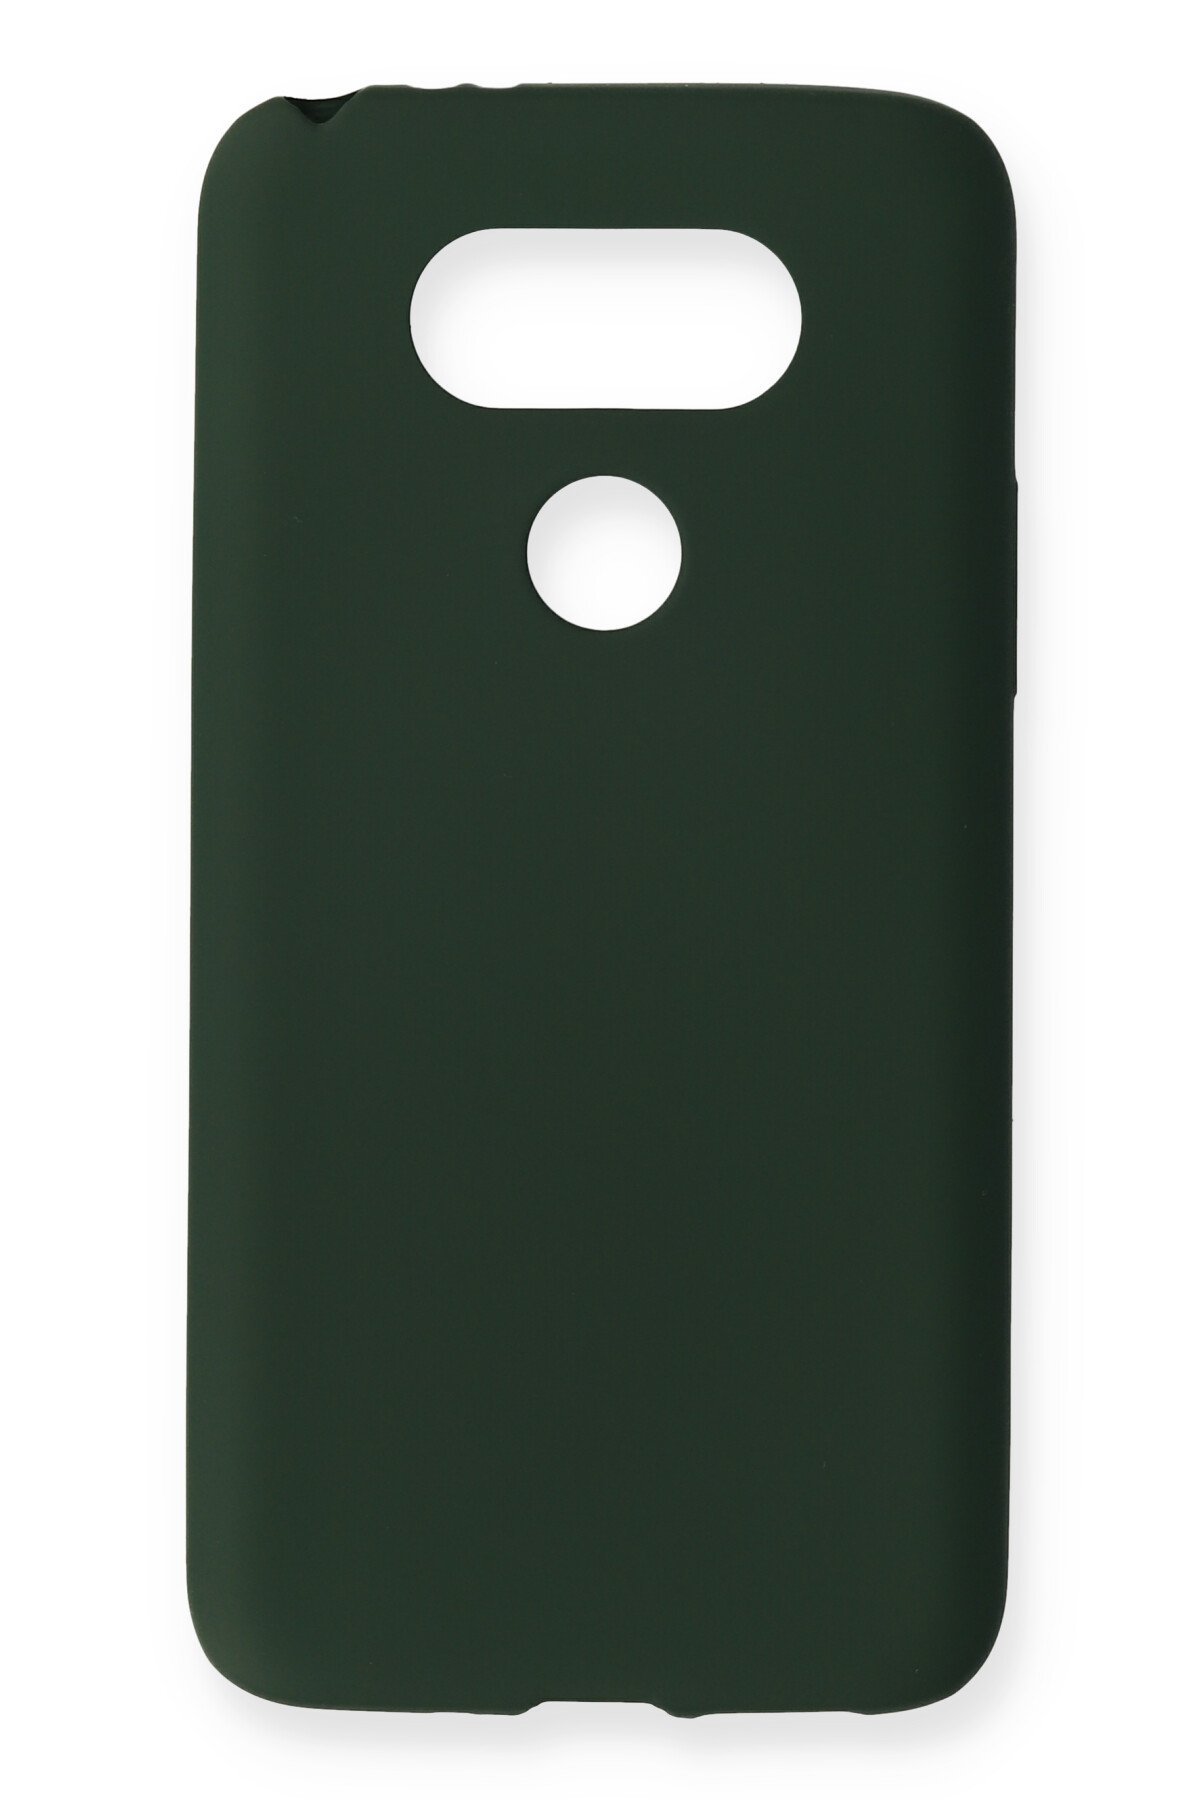 NewFace Newface LG G5 Kılıf Premium Rubber Silikon - Koyu Yeşil